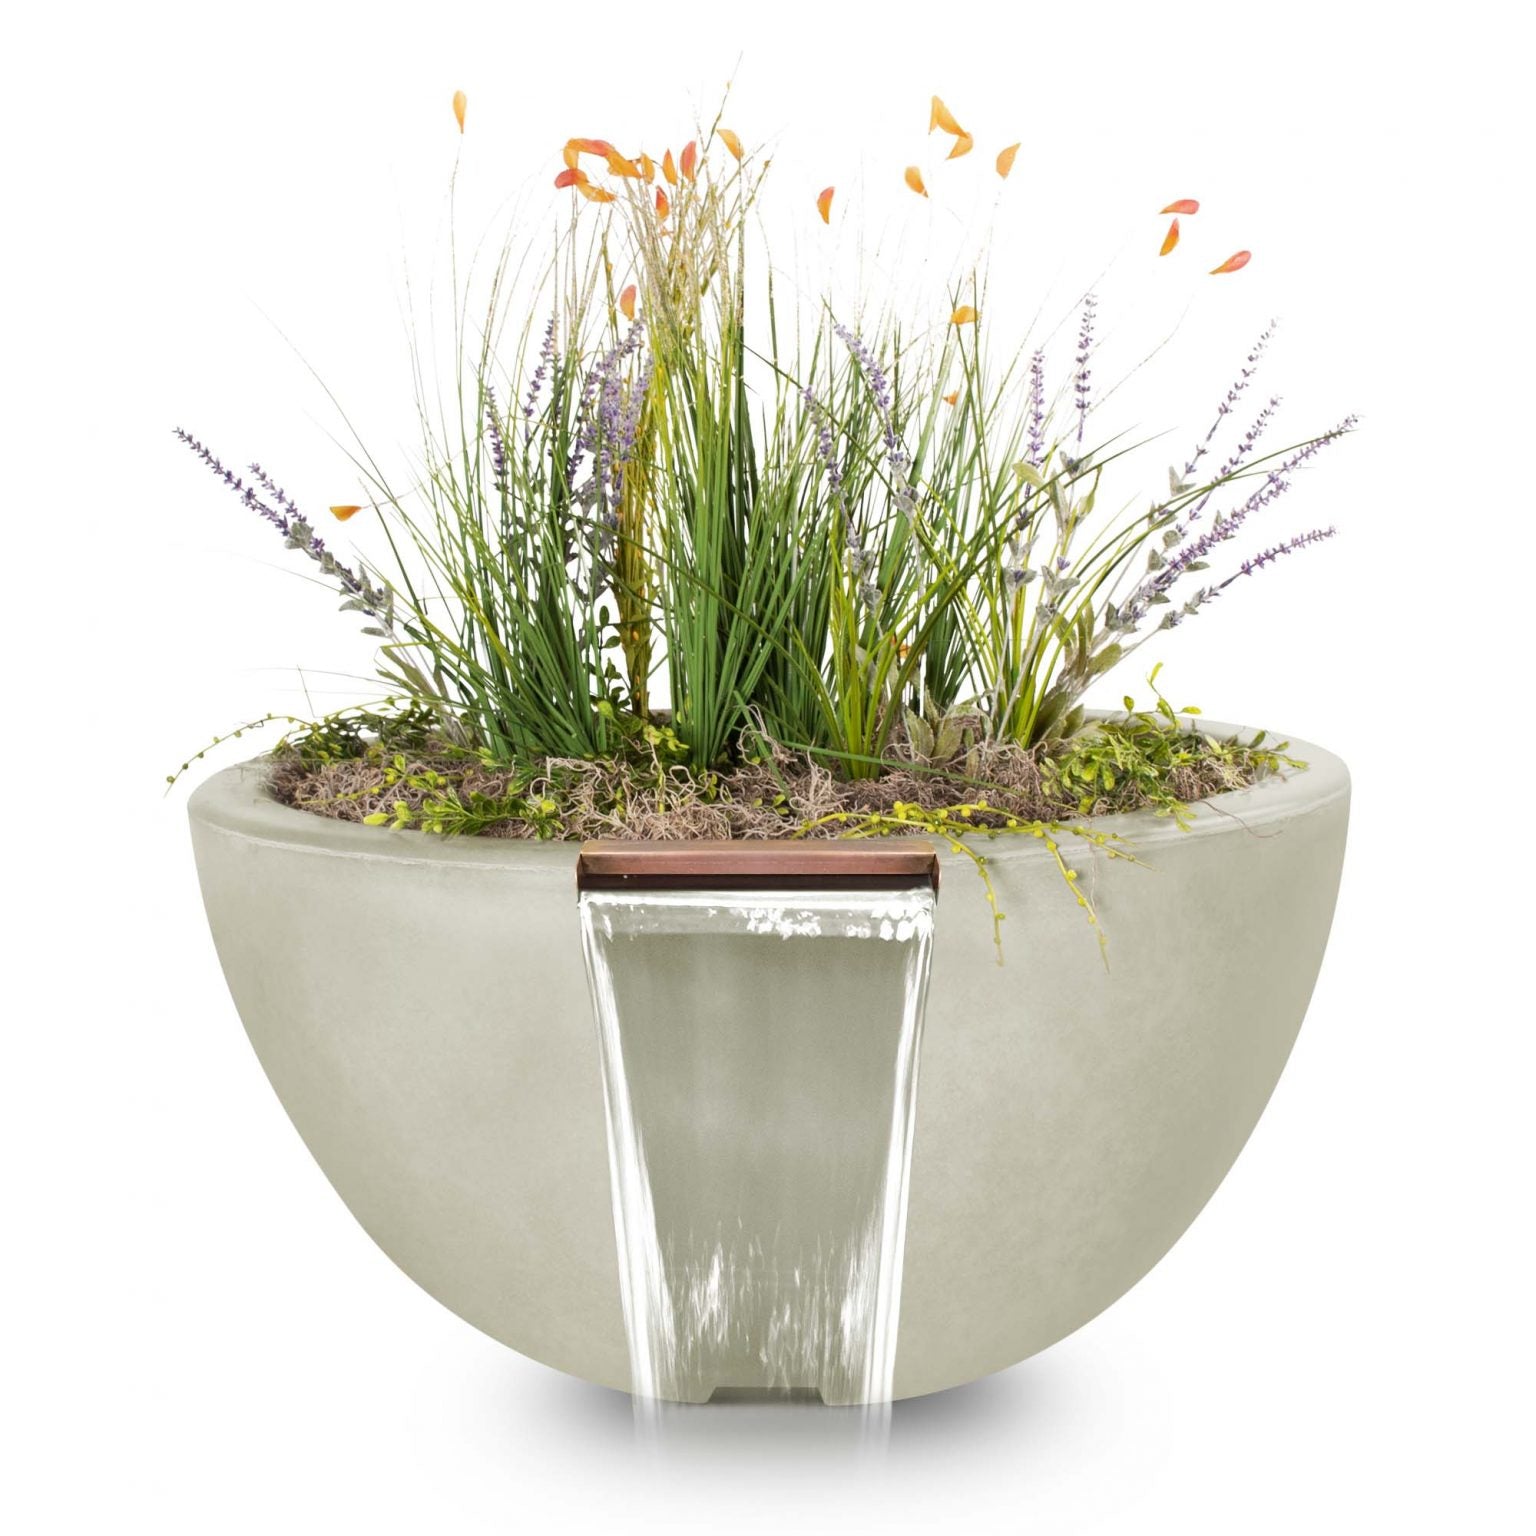 The Outdoor Plus Luna Planter & Water Bowl | GFRC Concrete